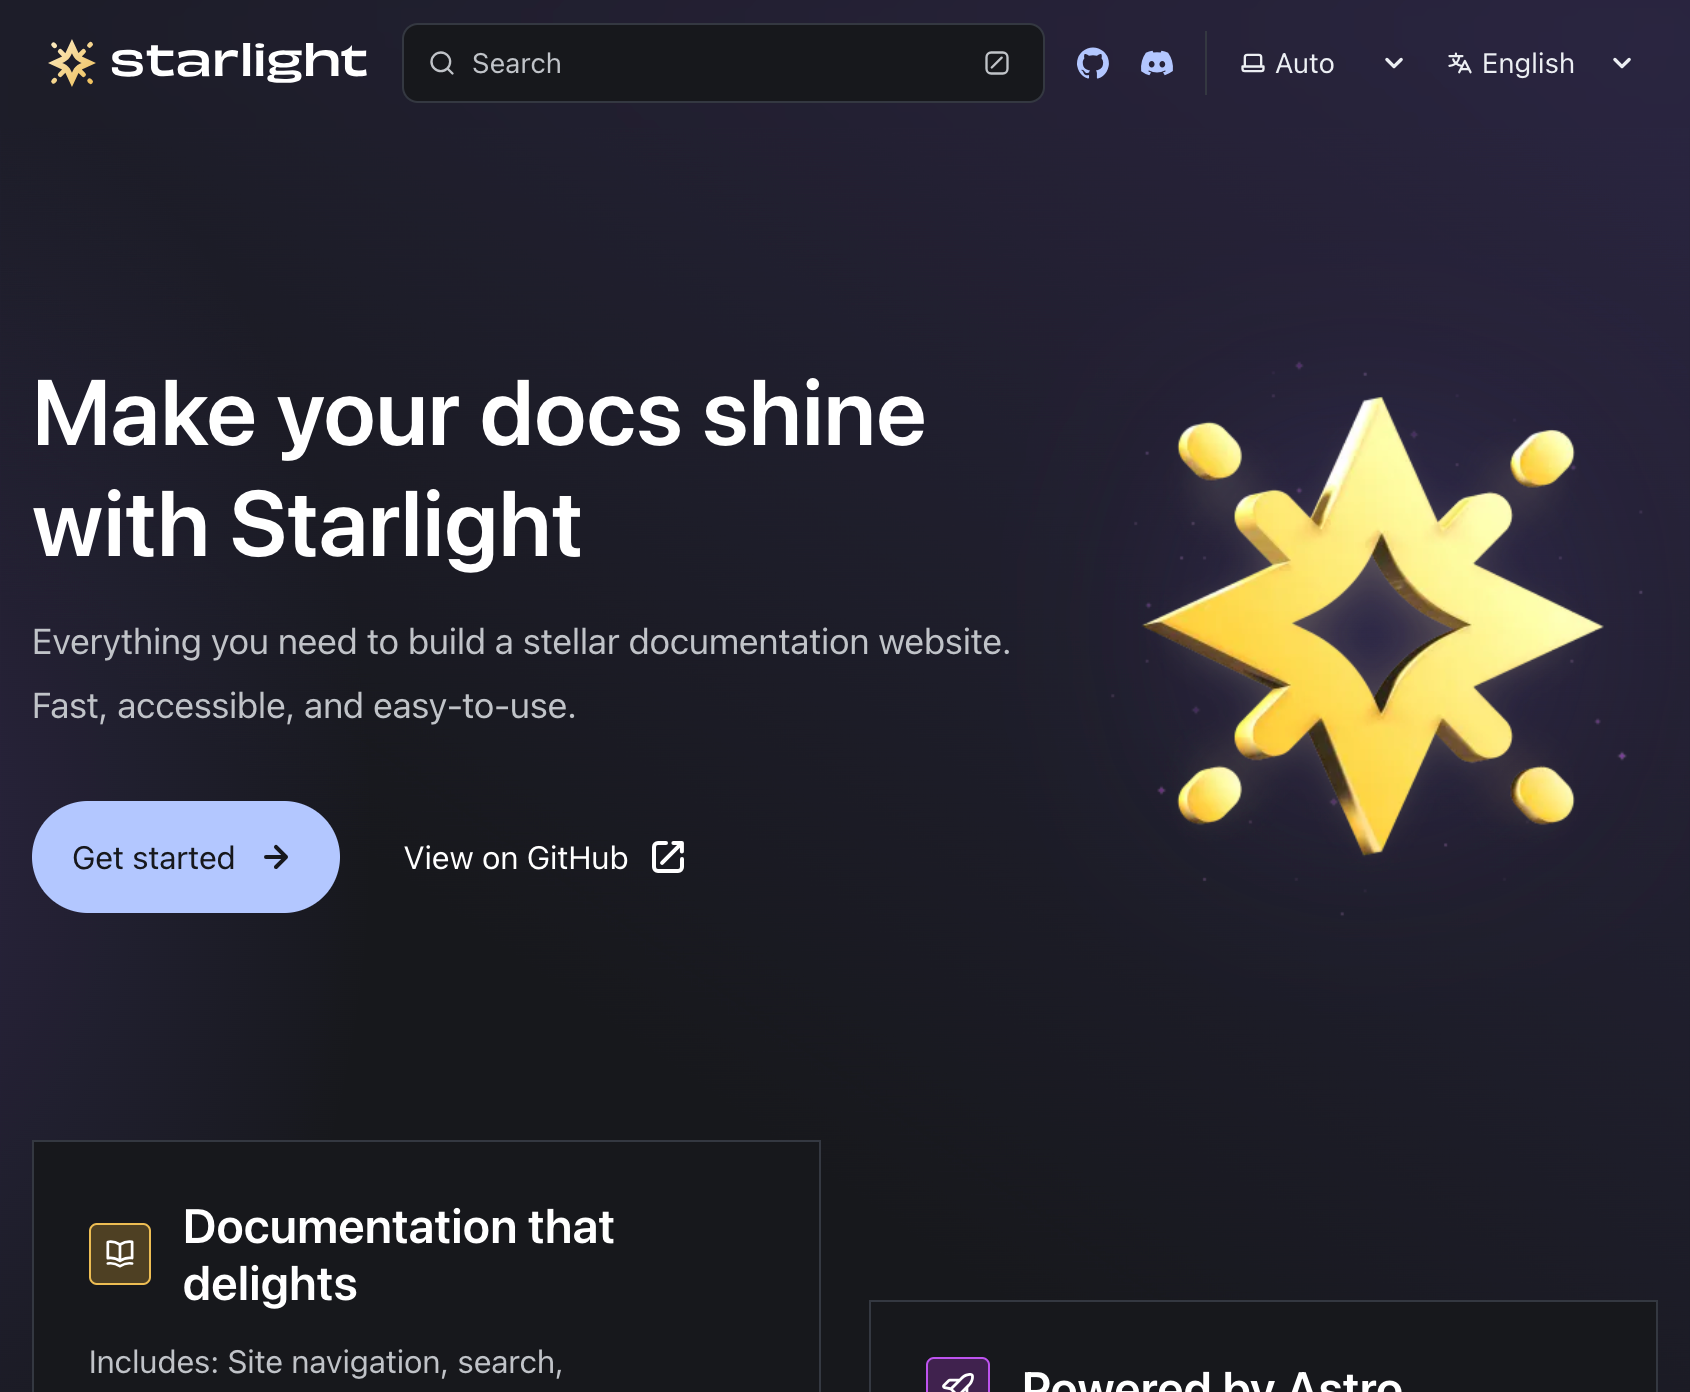 Starlight demo site